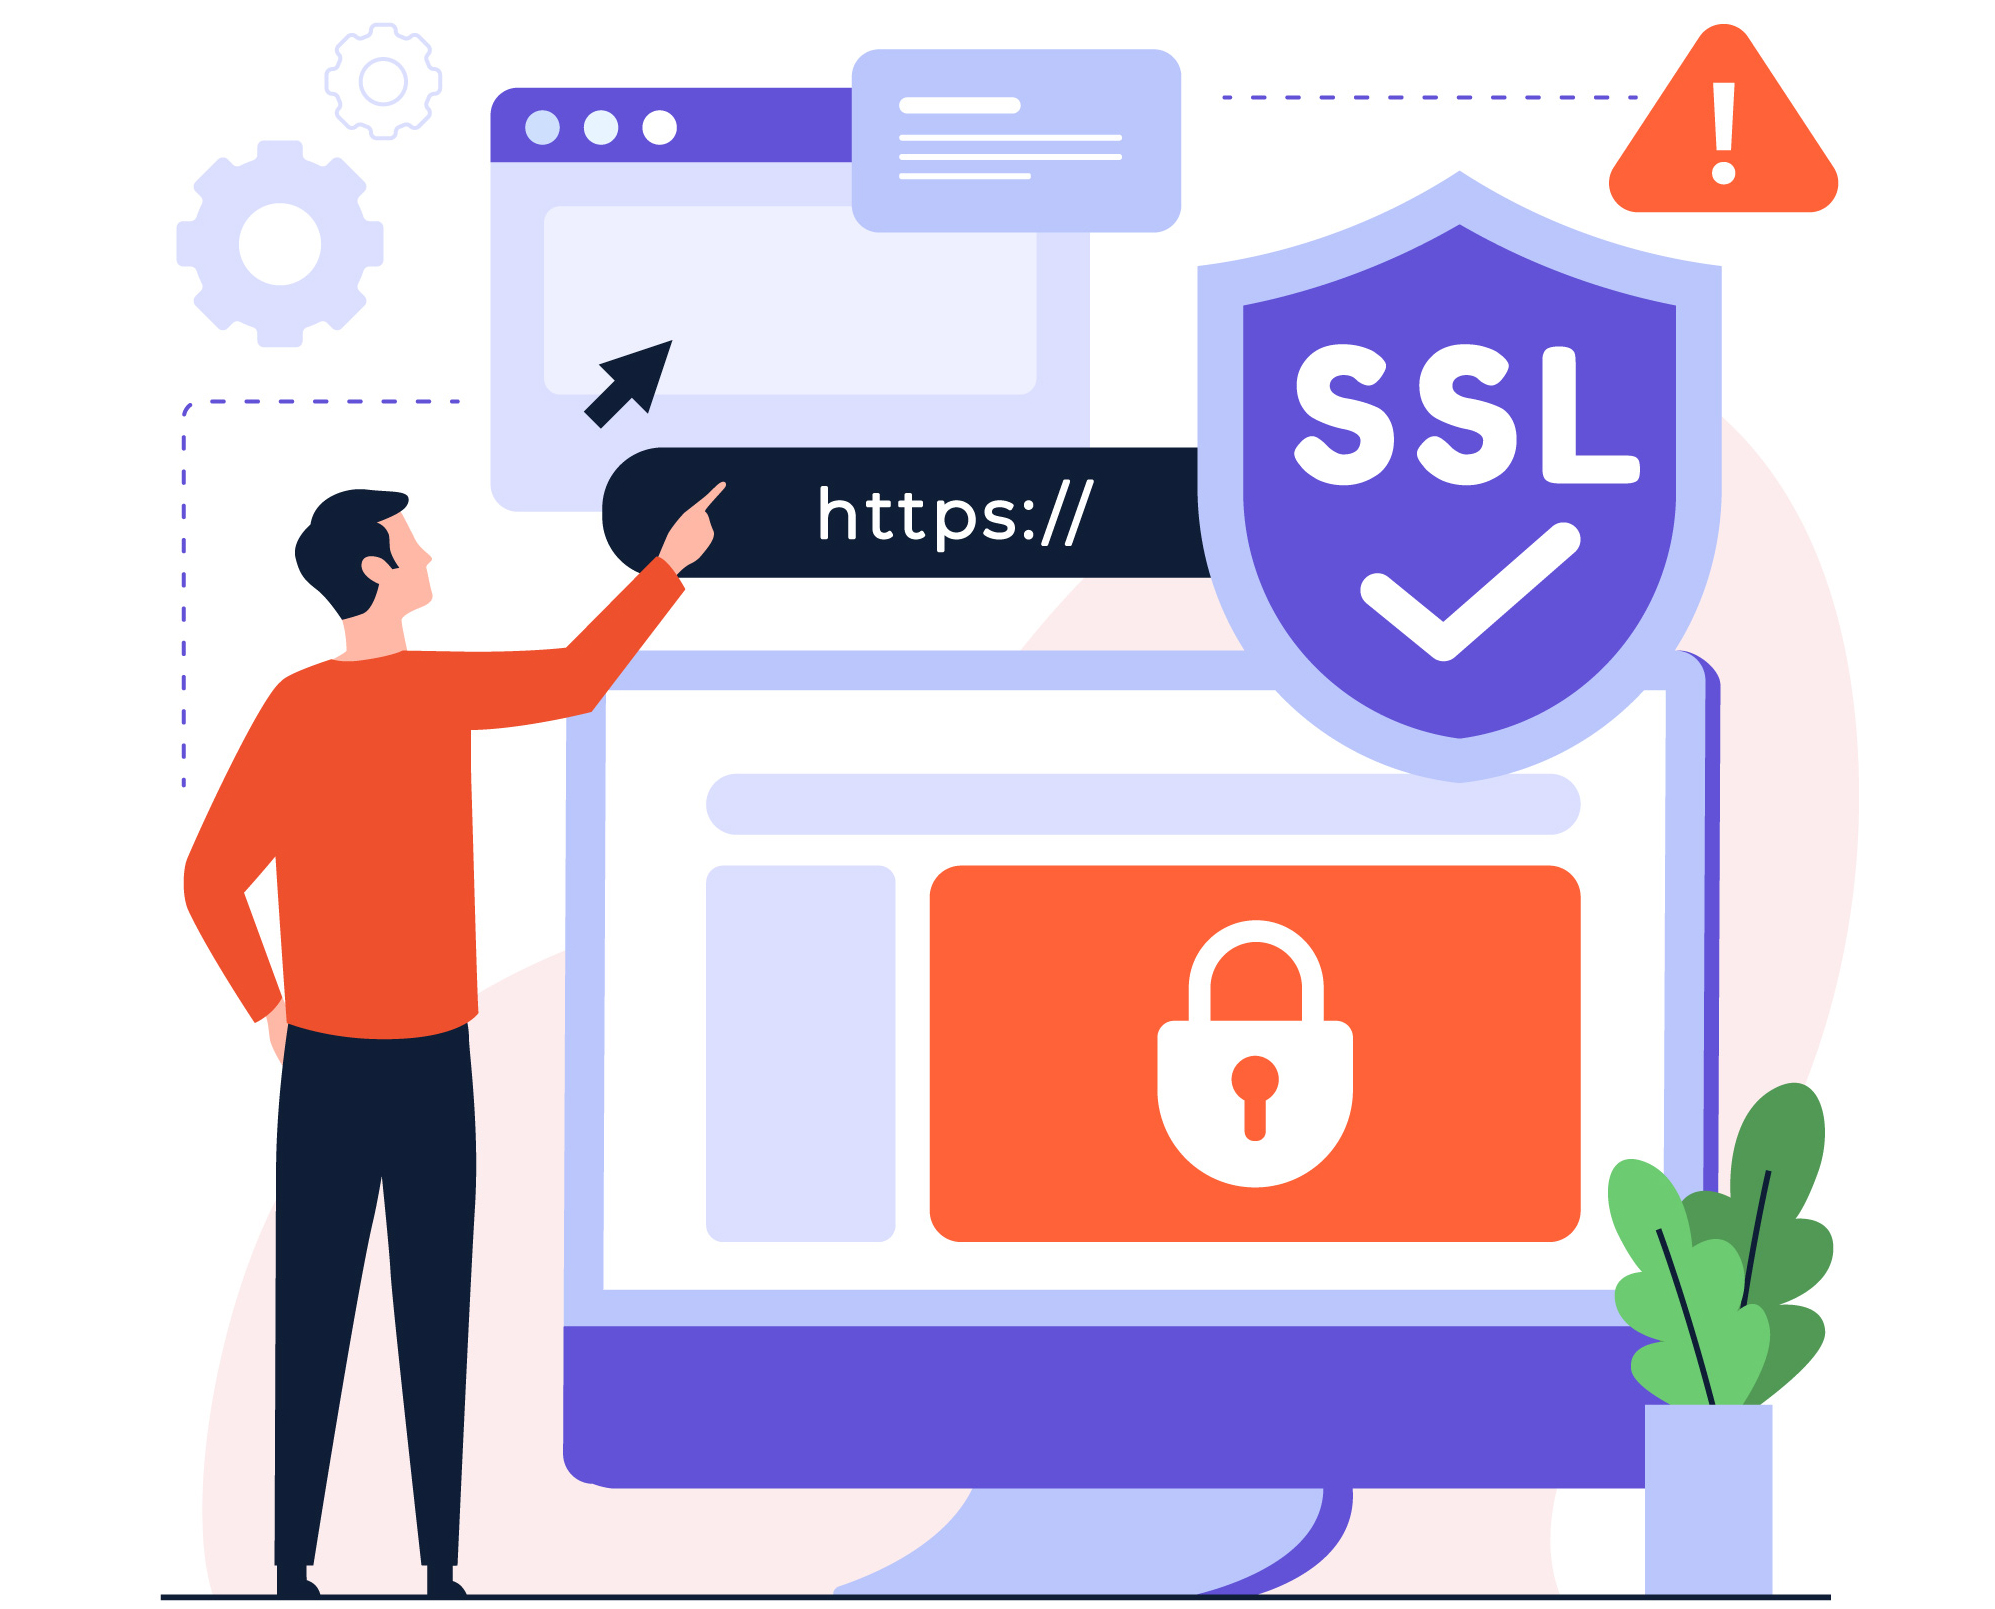 SSL/TLS Certificates